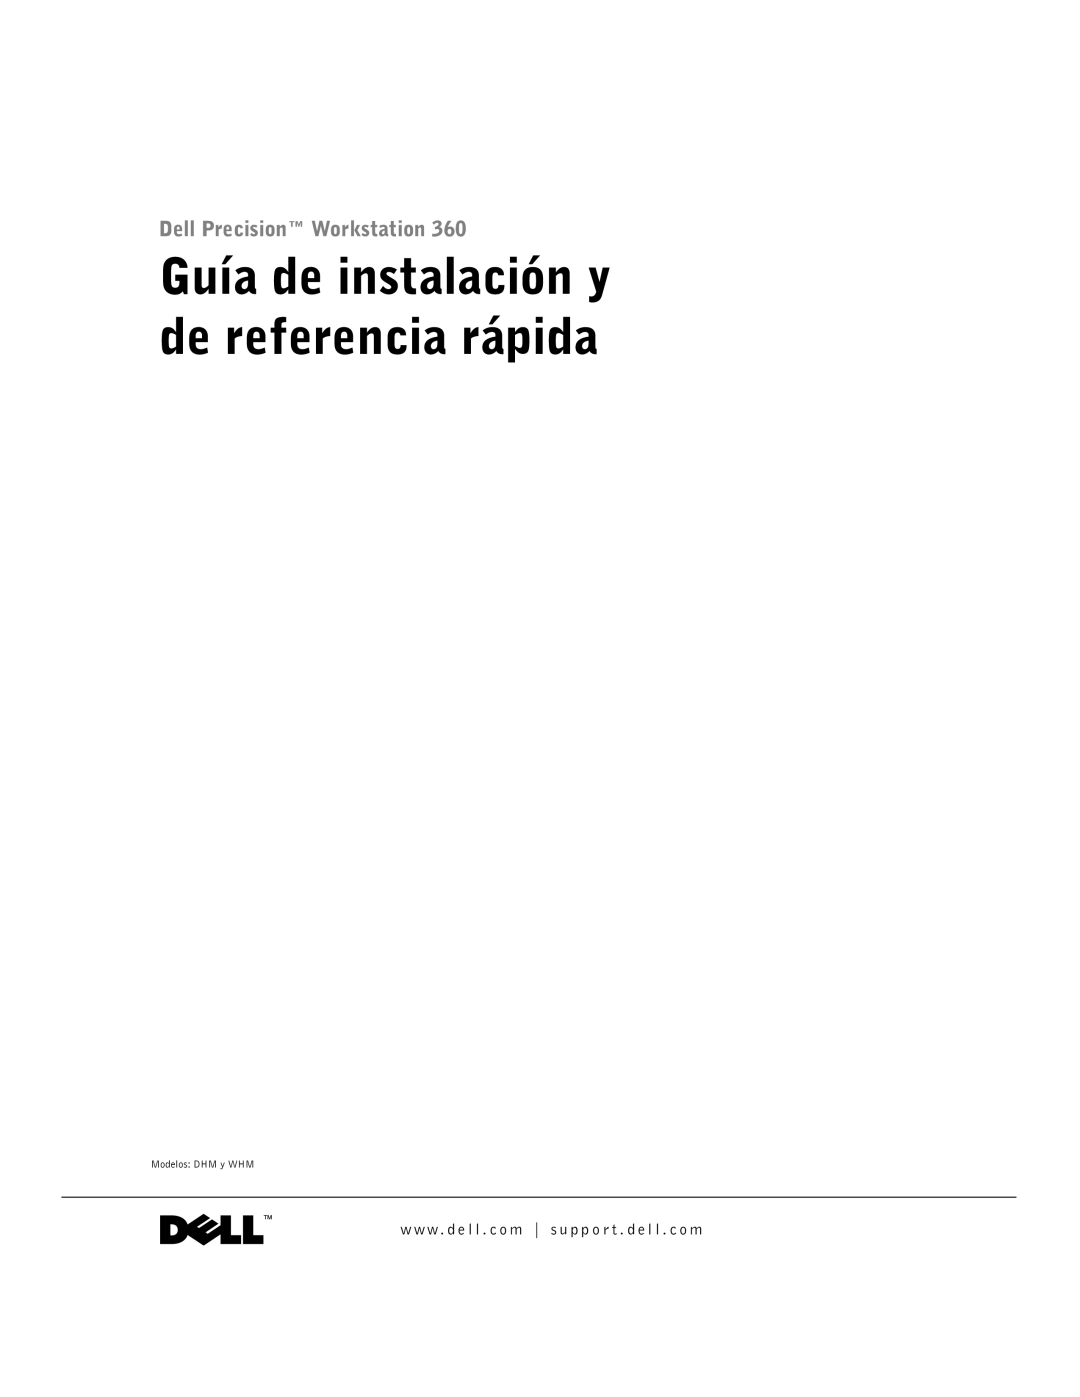 Dell F0276 manual Guía de instalación y de referencia rápida 